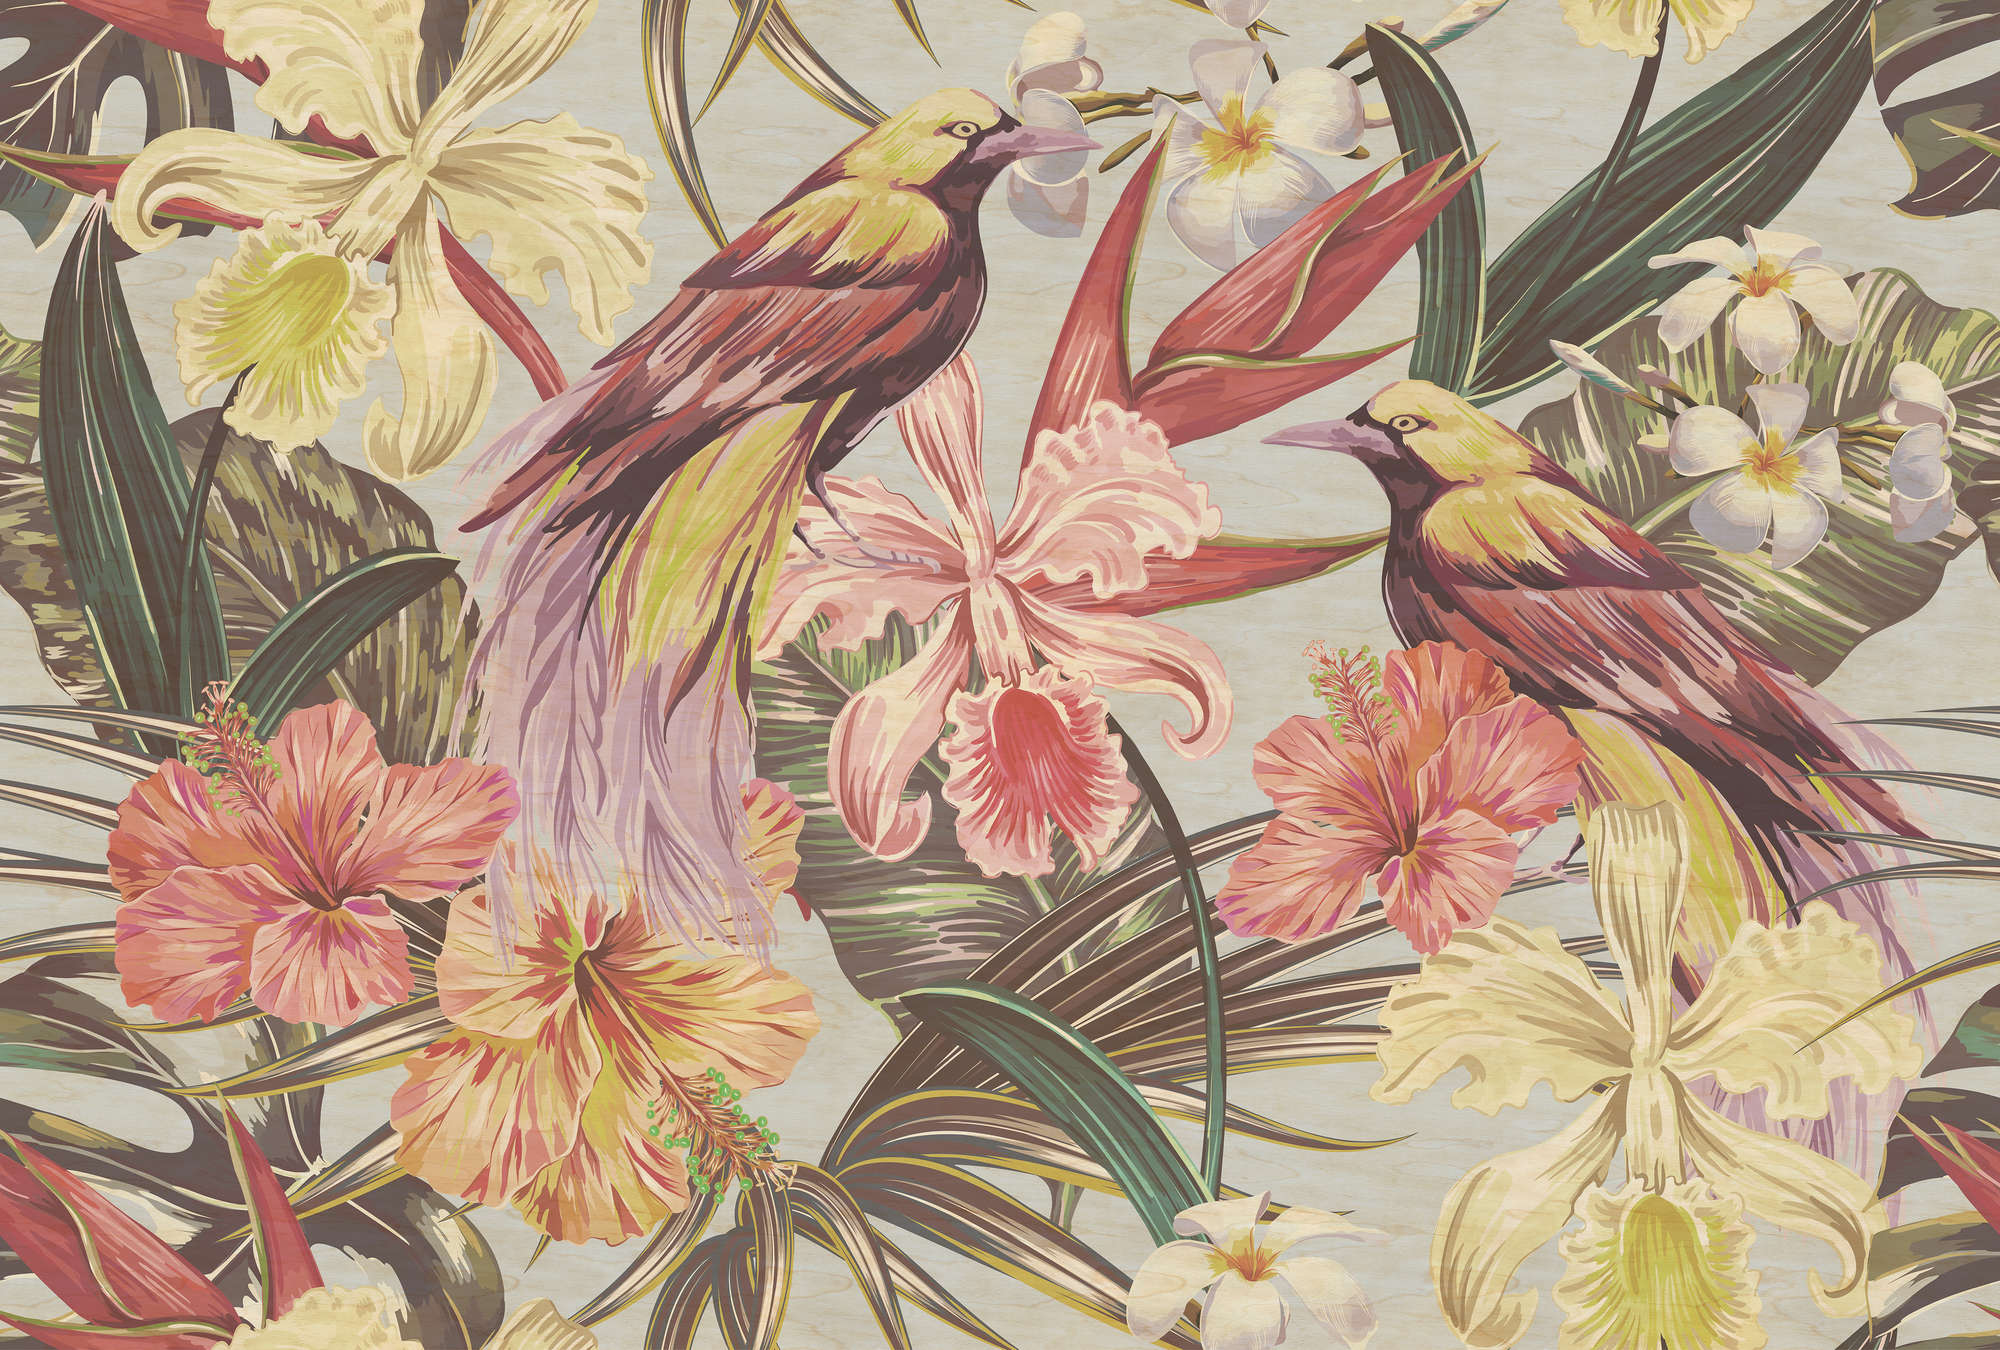             Pájaros exóticos 1 - Papel pintado Pájaros exóticos y flores en estructura contrachapada - Beige, Rosa | Perla liso no tejido
        